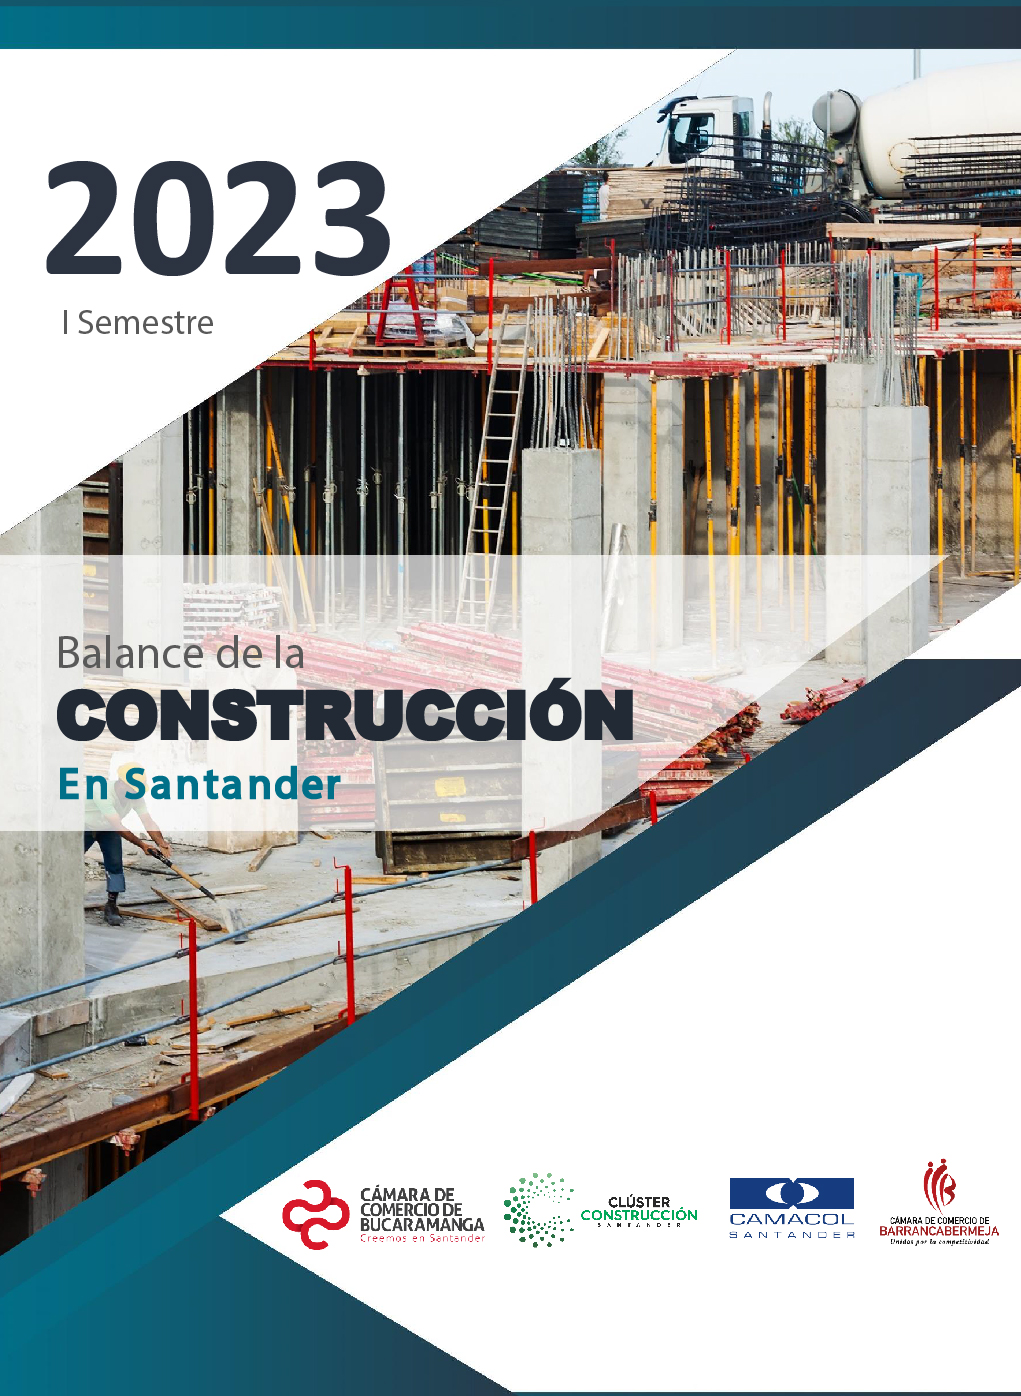 Balance de la Construcción de Santander 2023 - I semestre